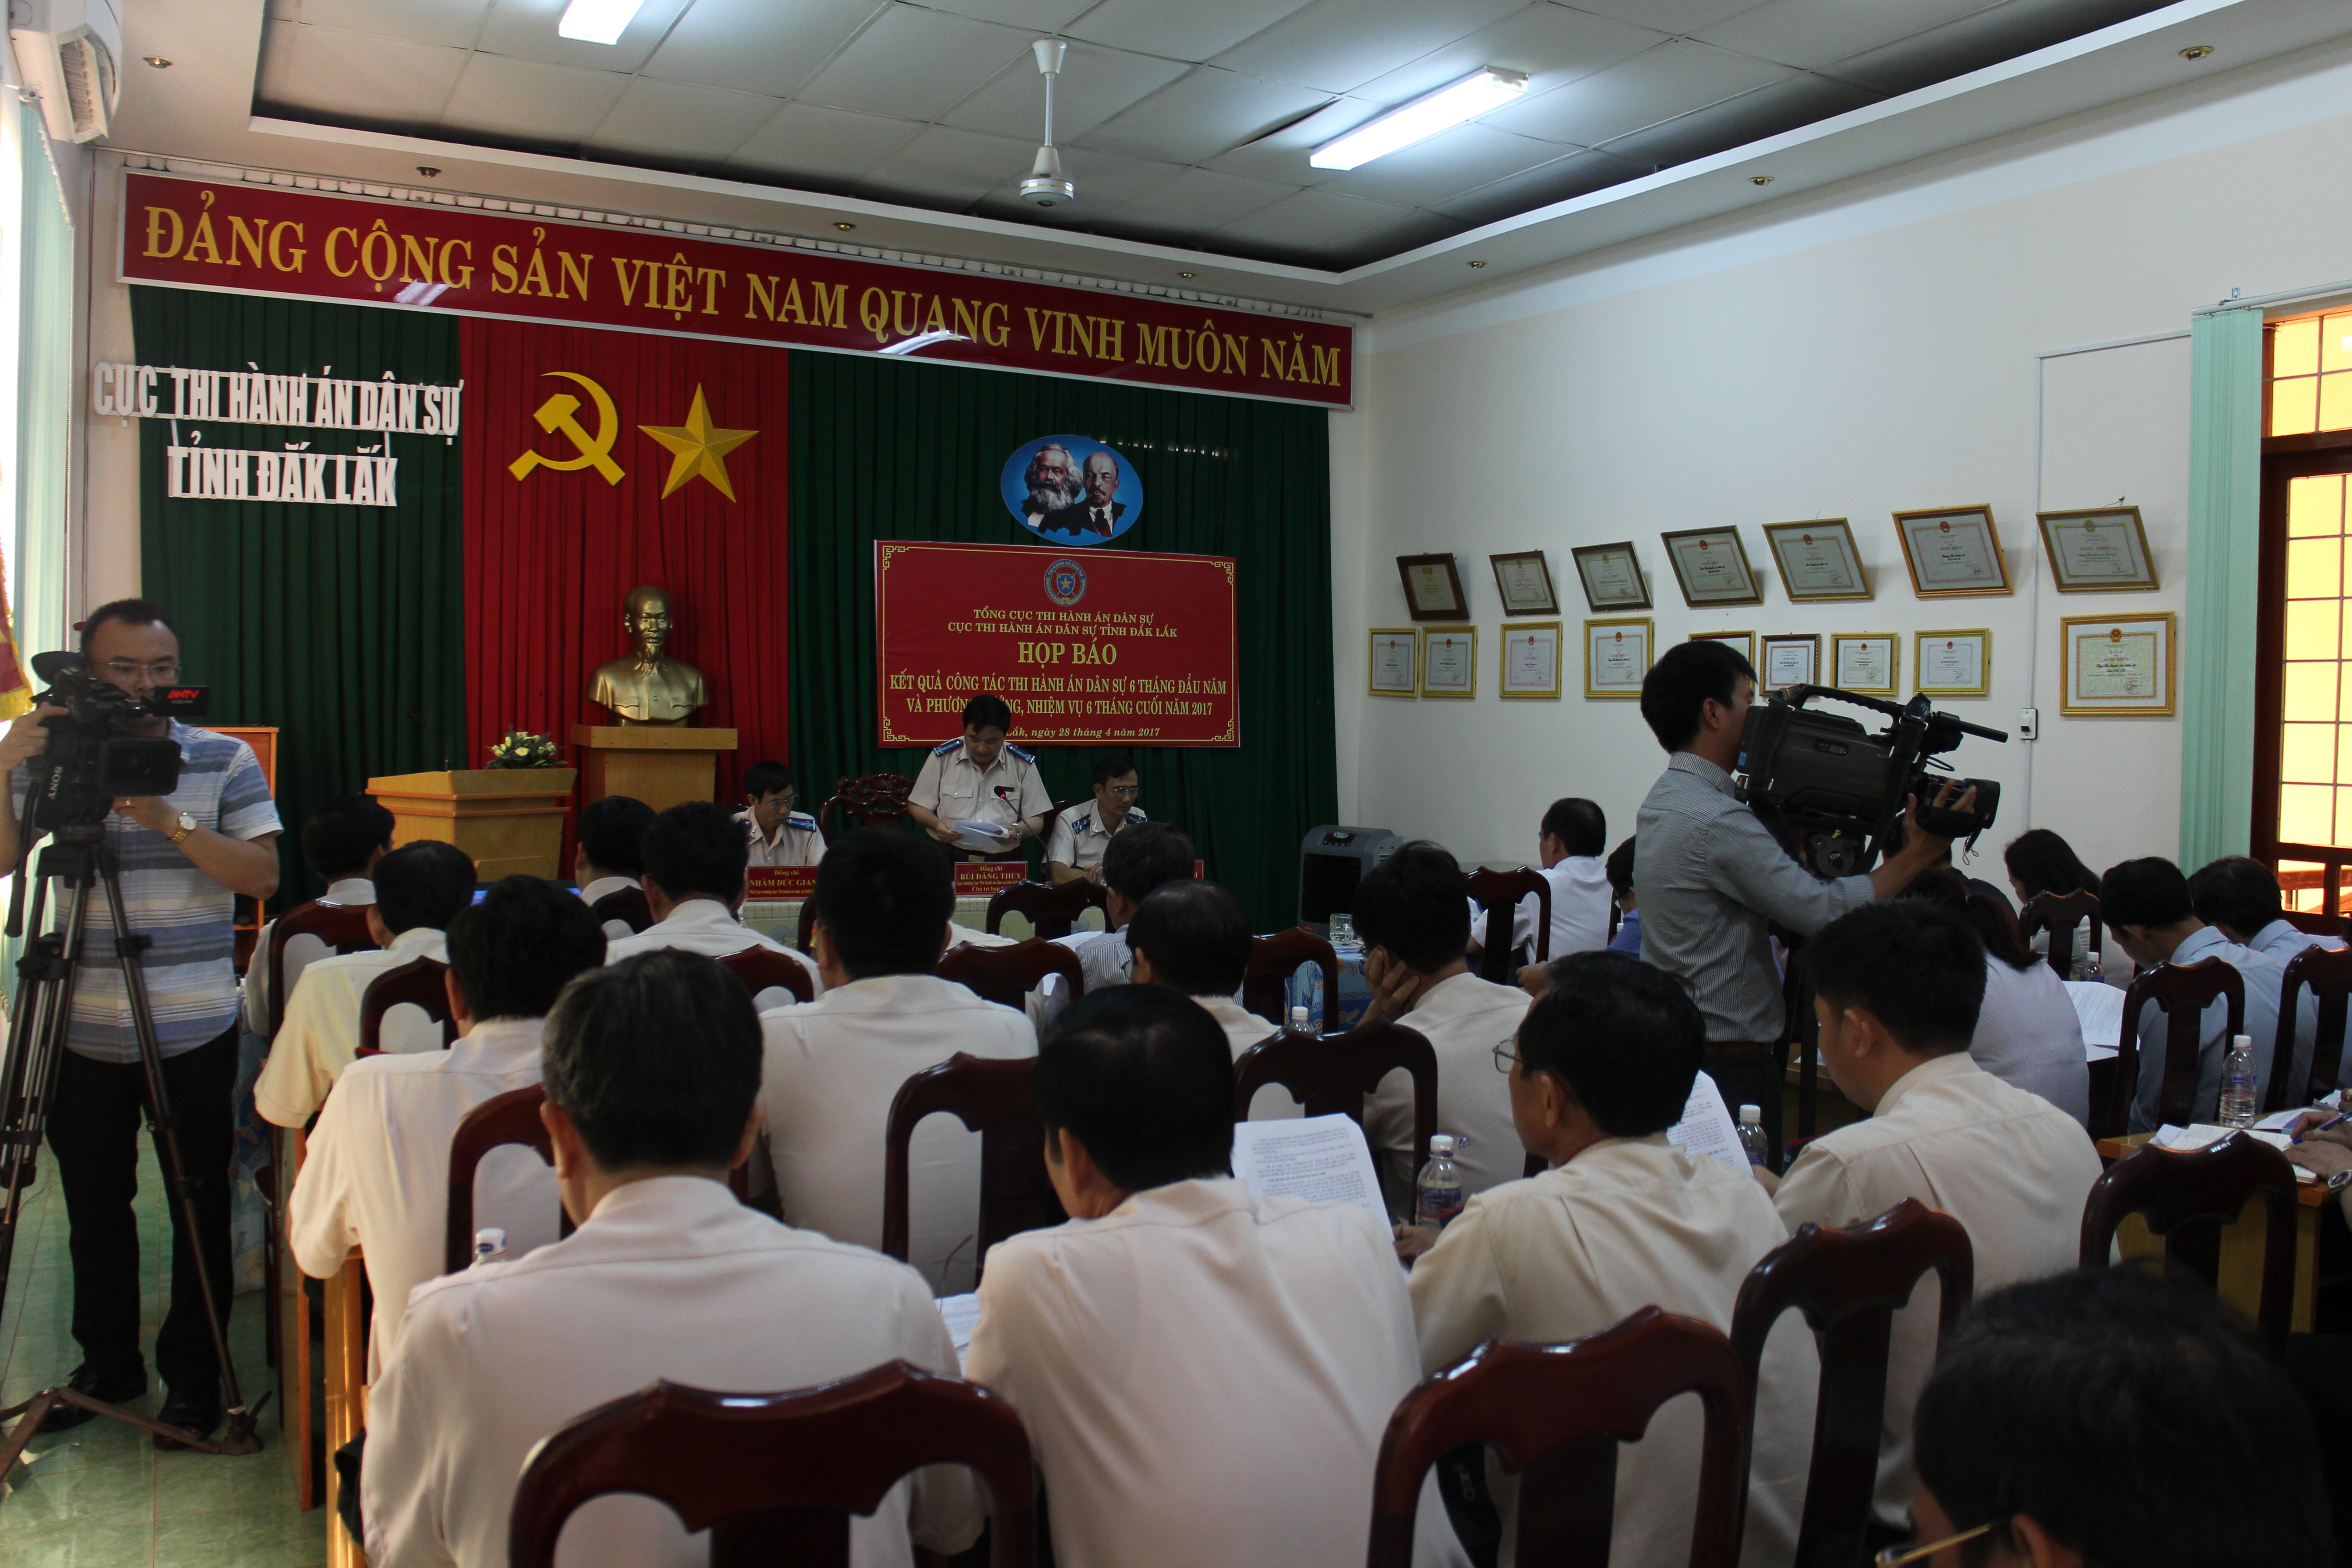 Thứ trưởng Bộ Tư pháp Nguyễn Khánh Ngọc thăm và làm việc tại Cục Thi hành án dân sự tỉnh Đắk Lắk